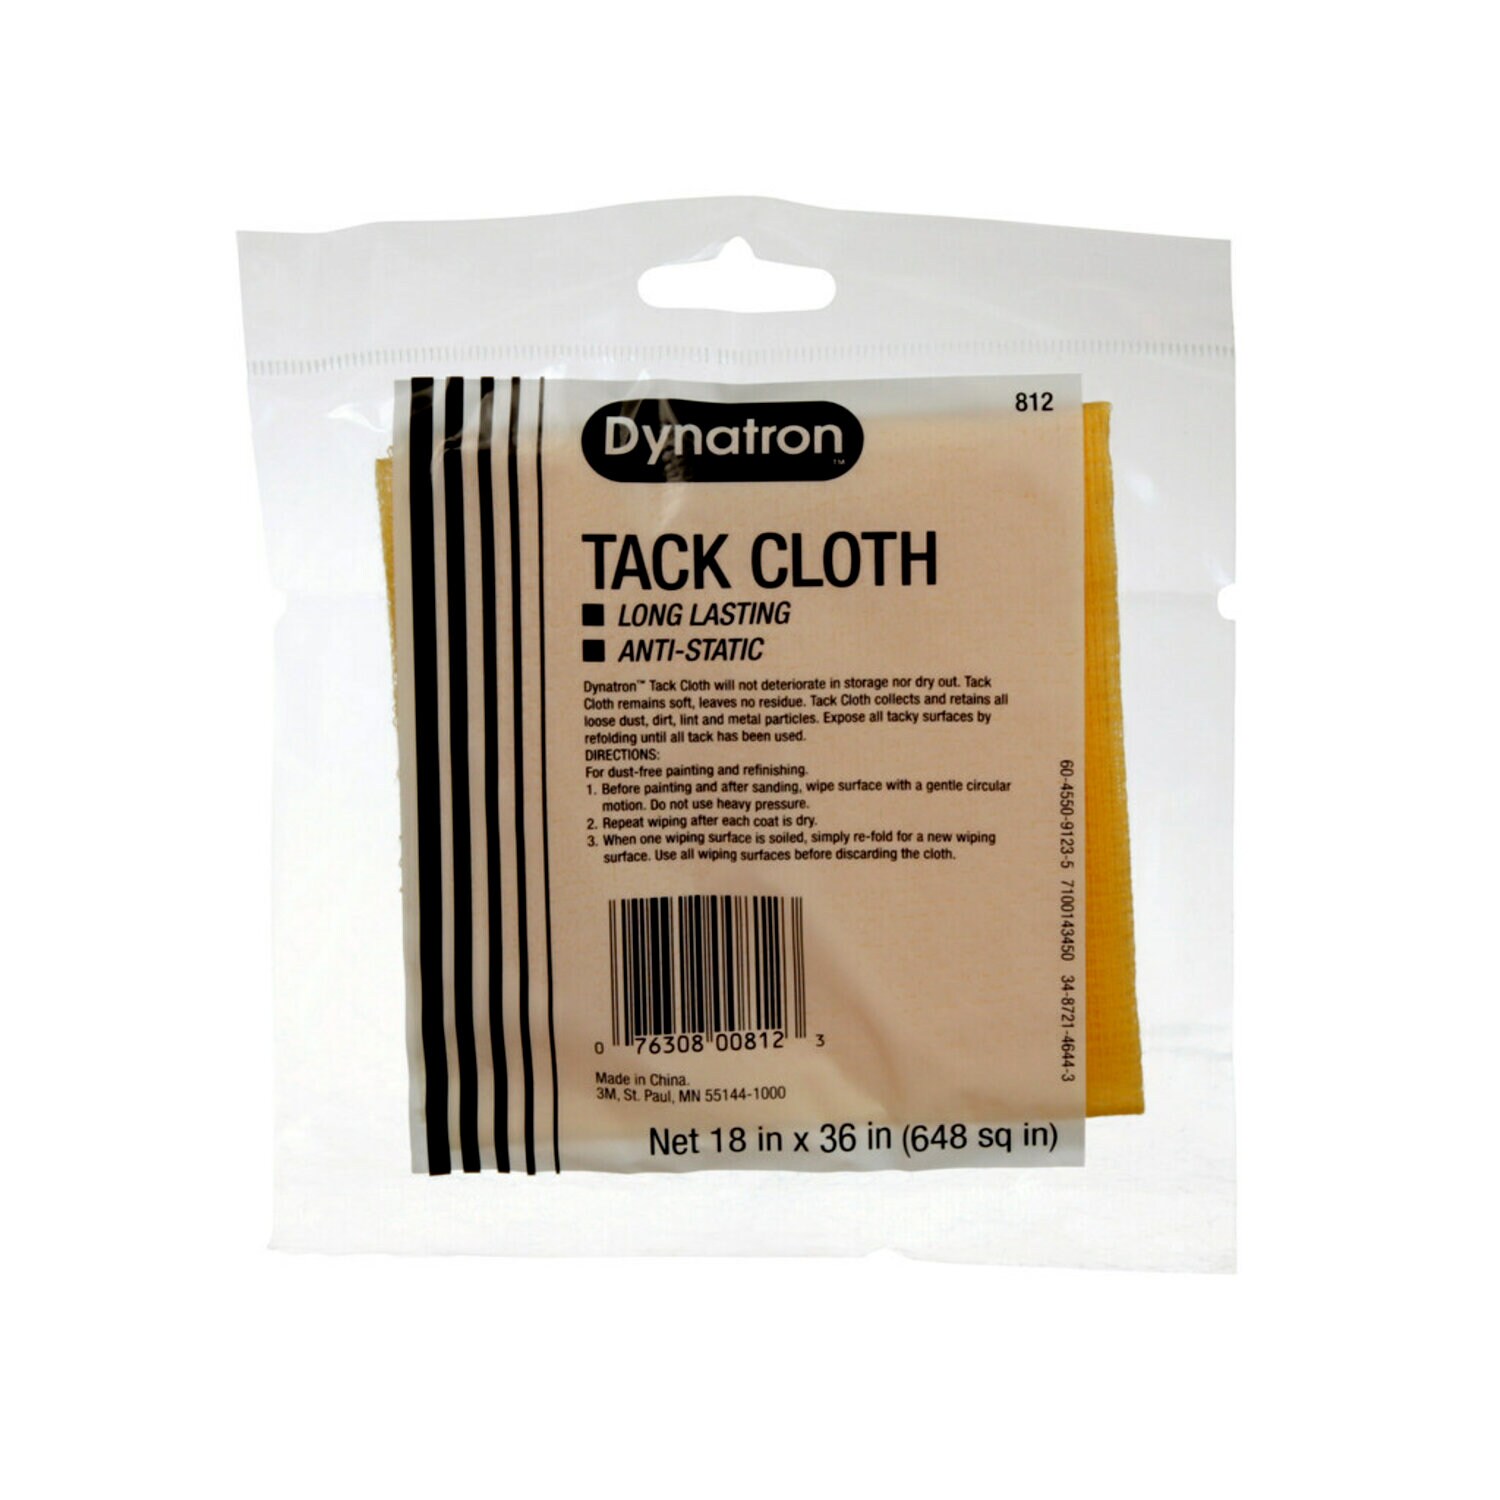 7100143450 - Dynatron Boxed Tack Cloth, 00812, 12 tack cloths per carton, 12 cartons per case